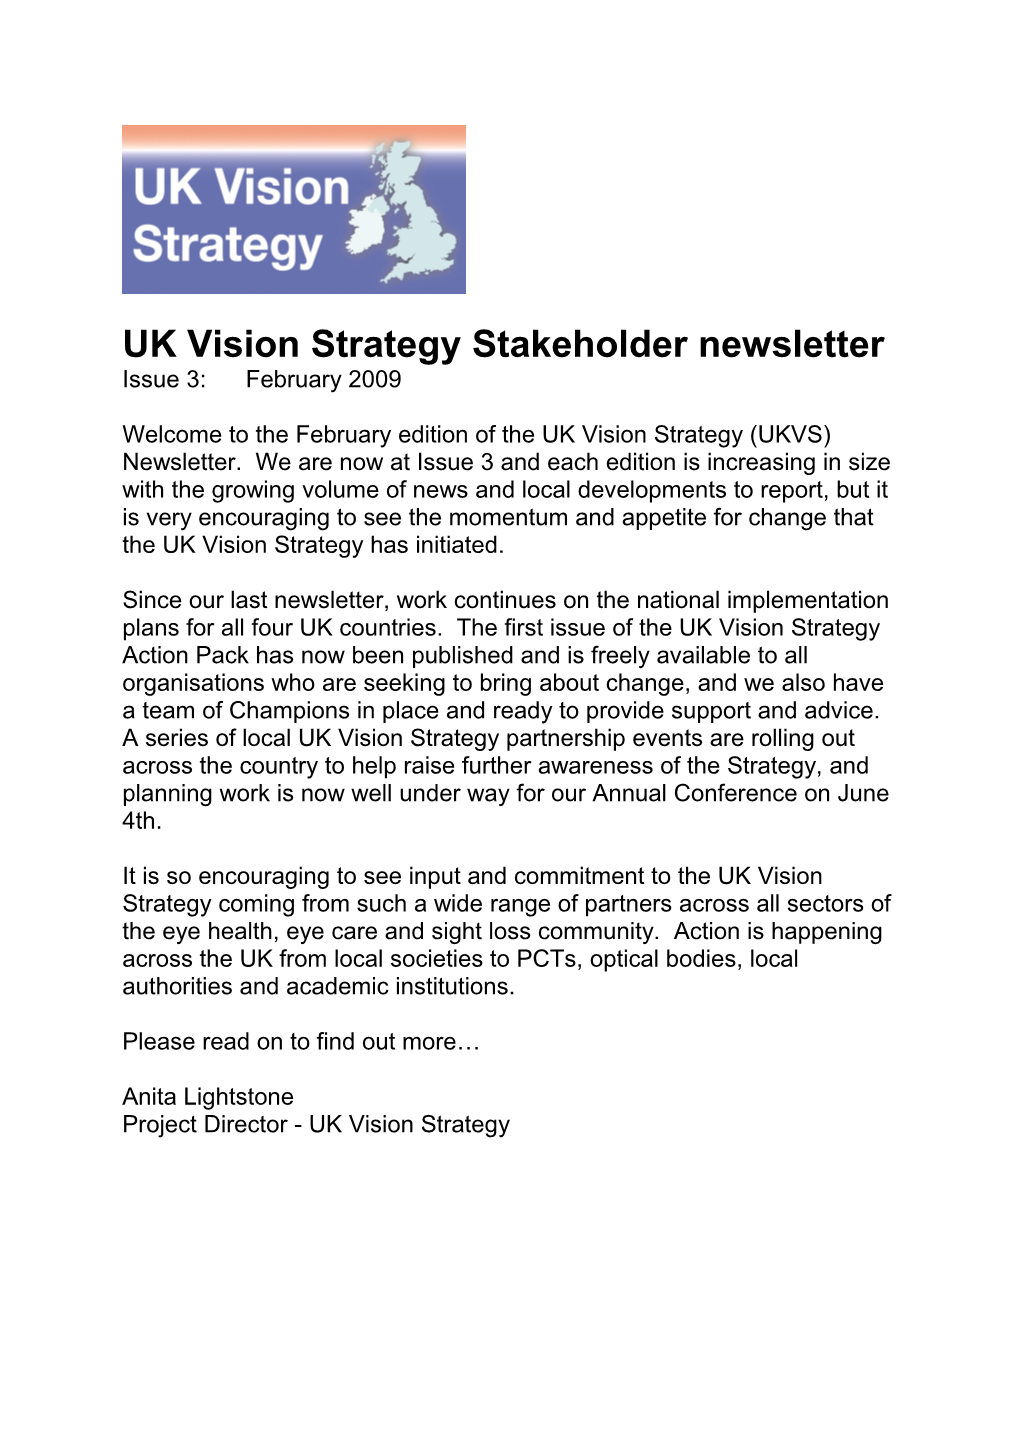 UK Vision Strategy Stakeholder Newsletter